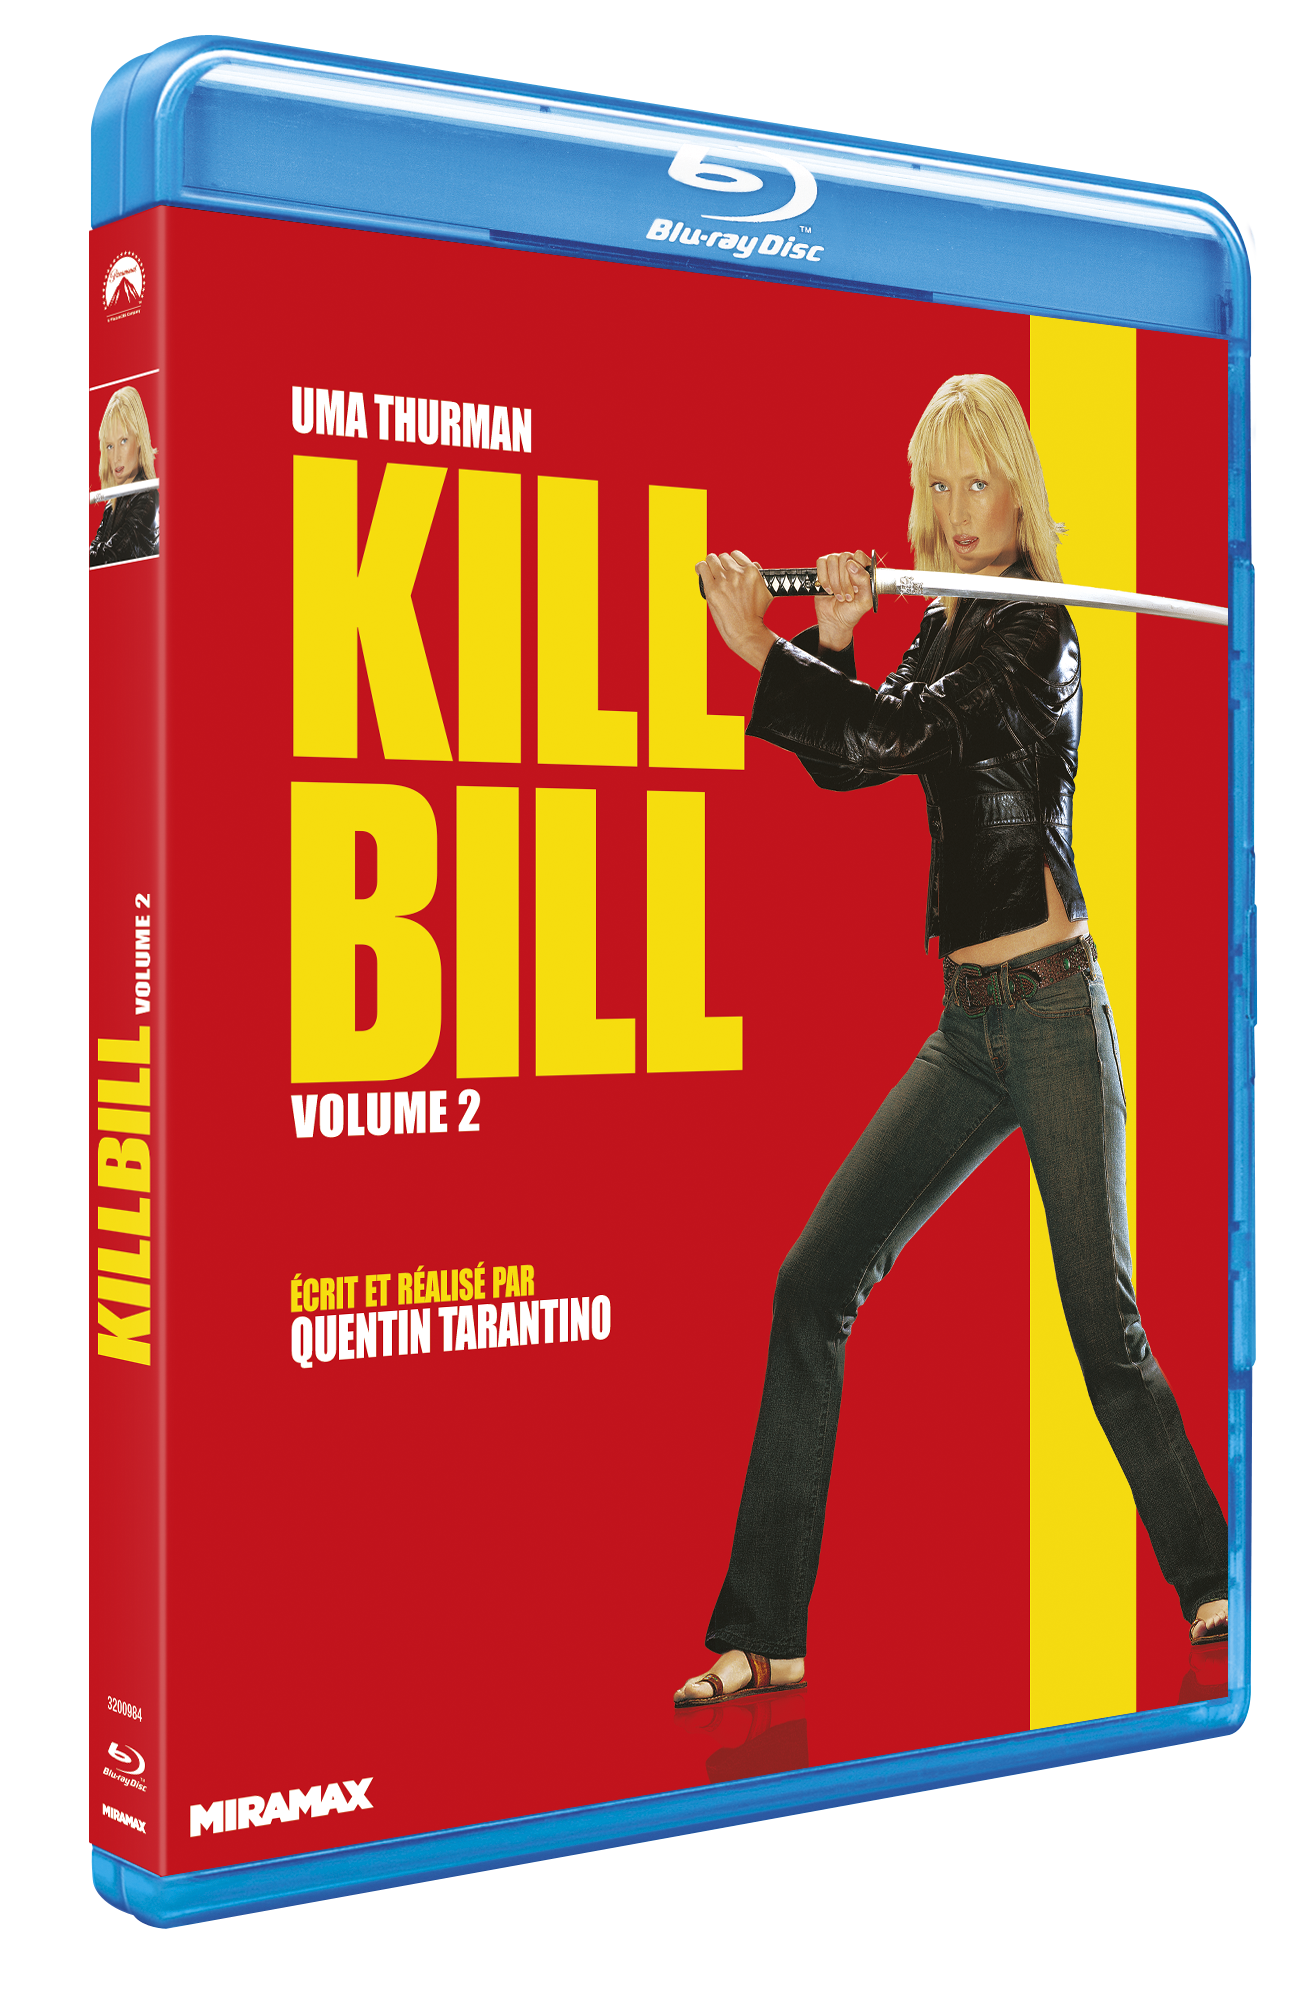 CONFIDENTIEL - KILL BILL 2 - BD